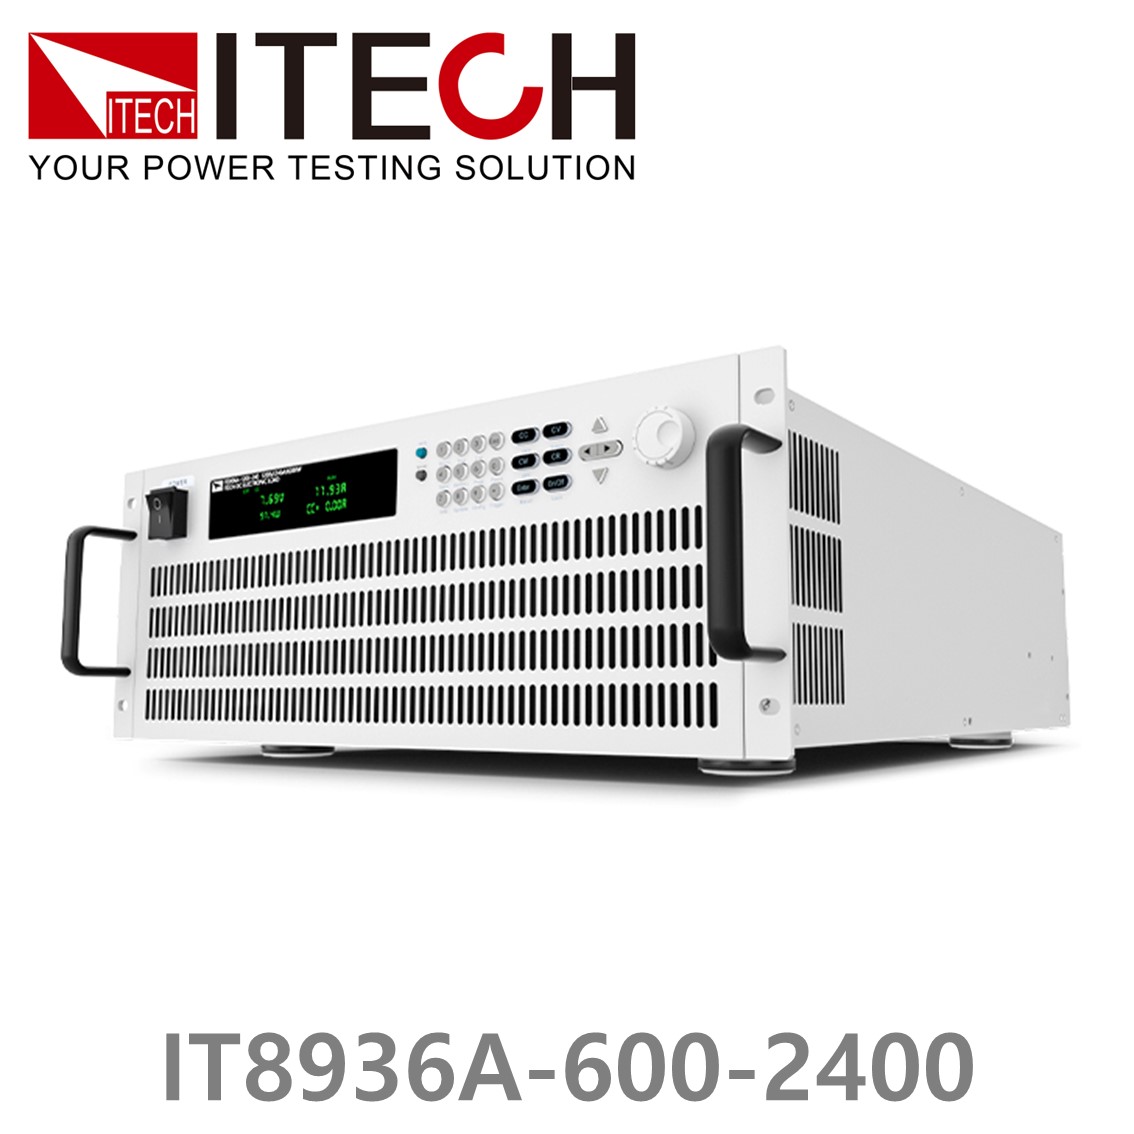 [ ITECH ] IT8936A-600-2400  고성능 고전력 DC 전자로드 600V/2400A/36kW (27U)